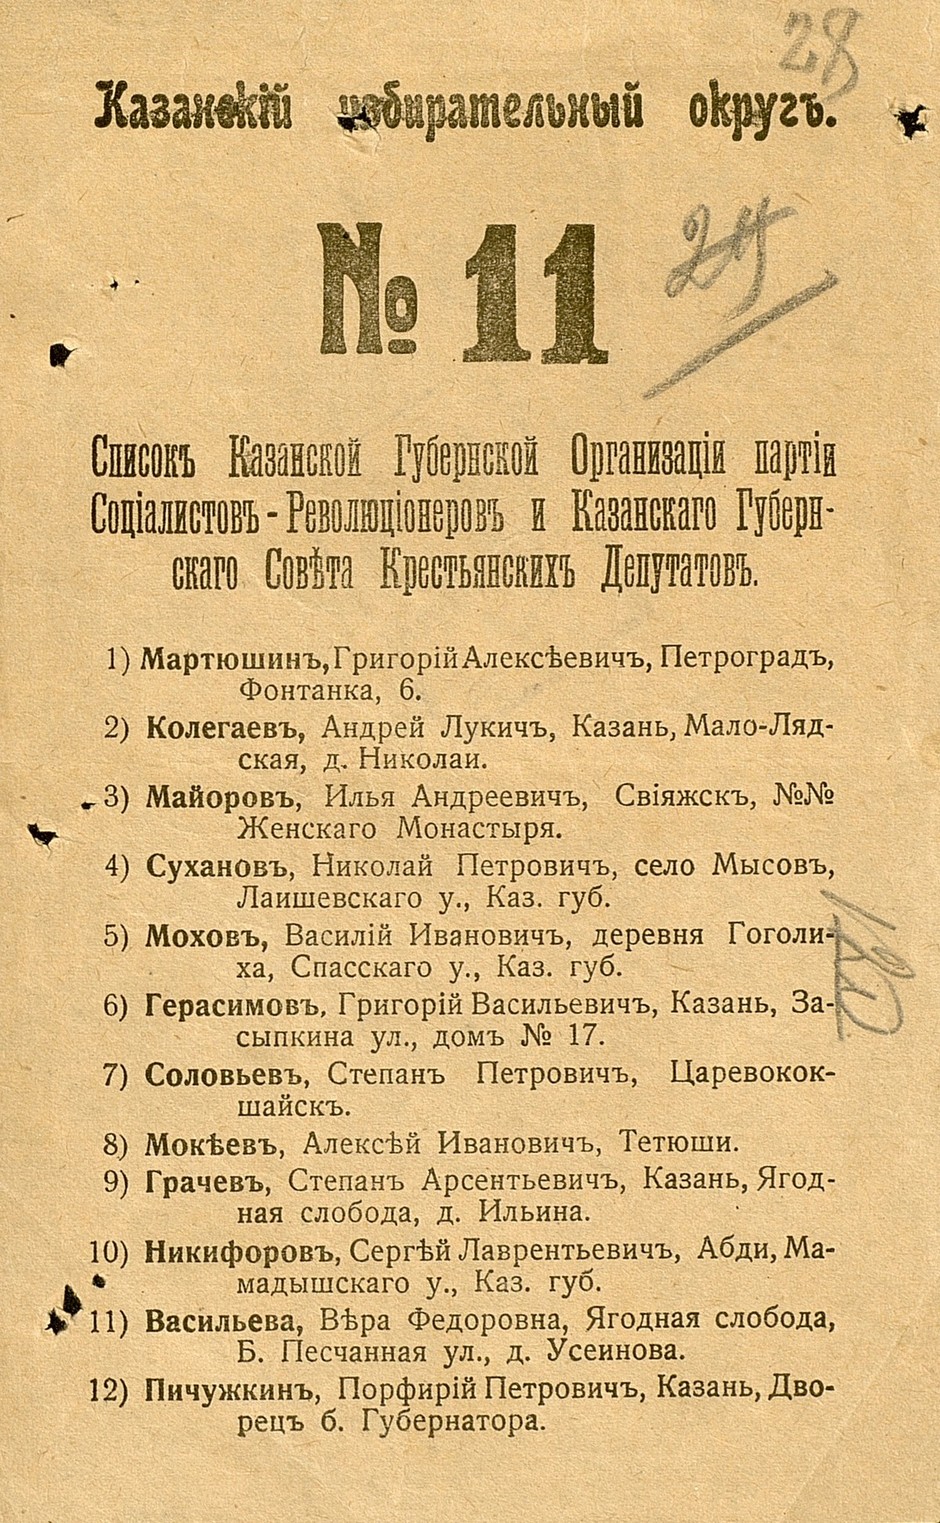 Бюллетени по выборам в Учредительное собрание. 1917 г.